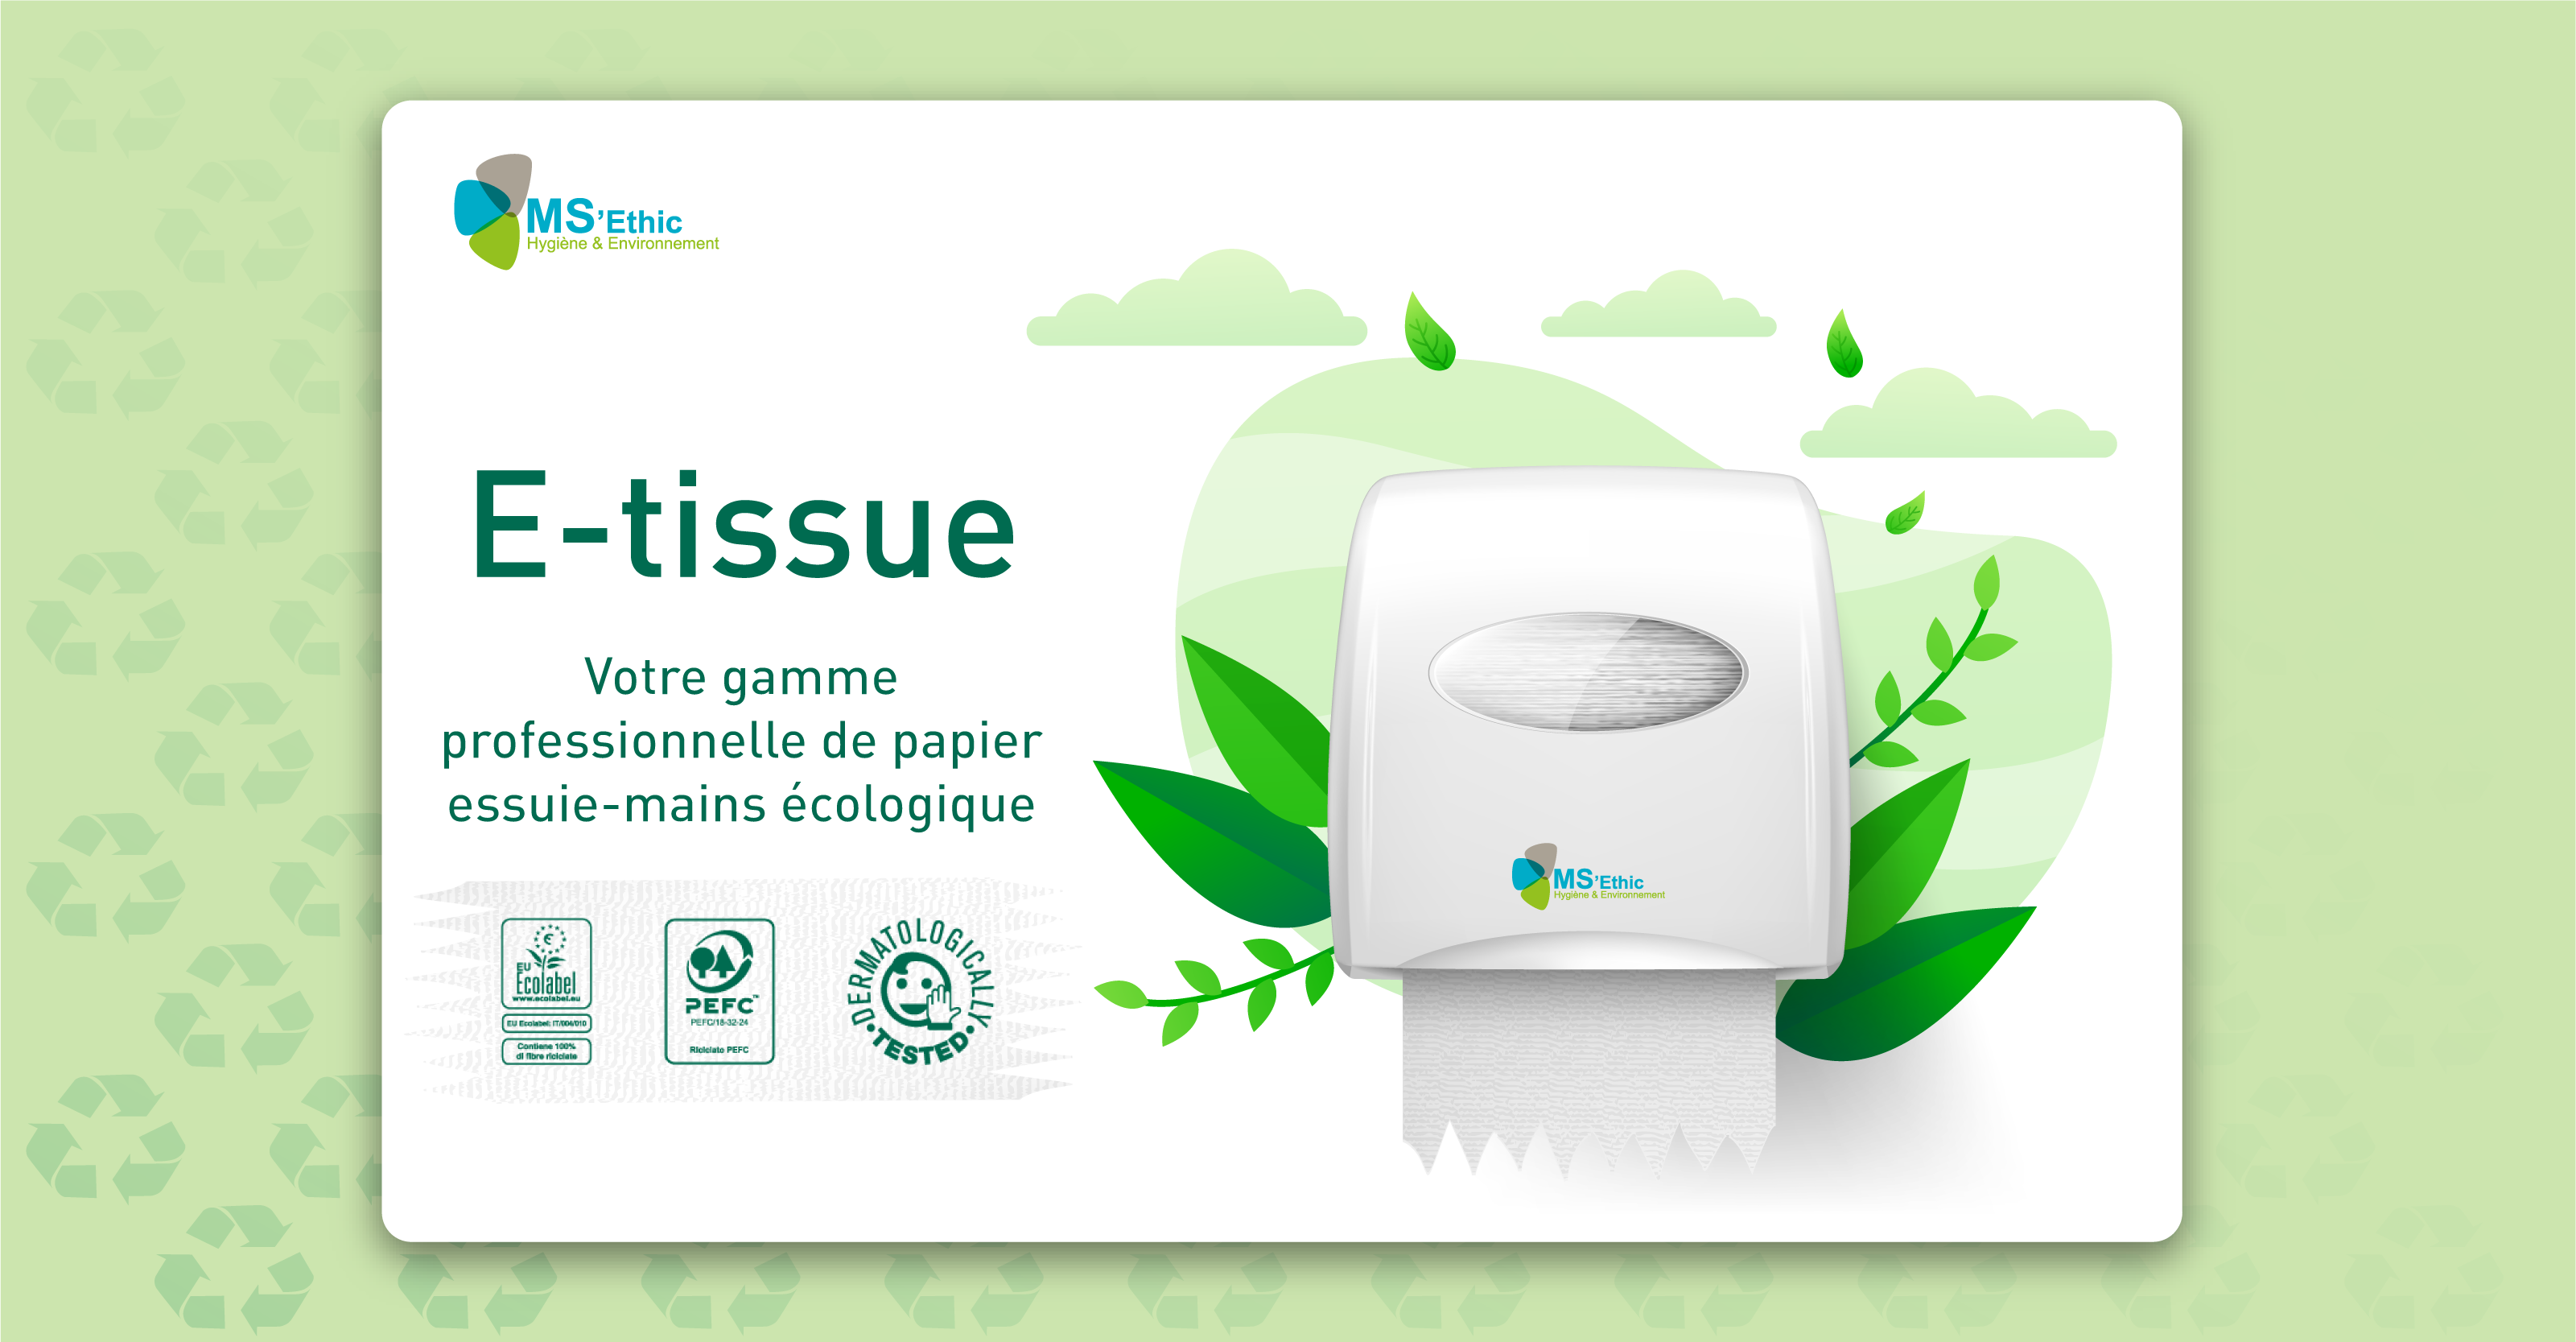 Fournisseur d'essuie mains marque PROP sur Bordeaux et la Nouvelle  Aquitaine - Grossiste en produits d'hygiène et entretien - Best Hygiène